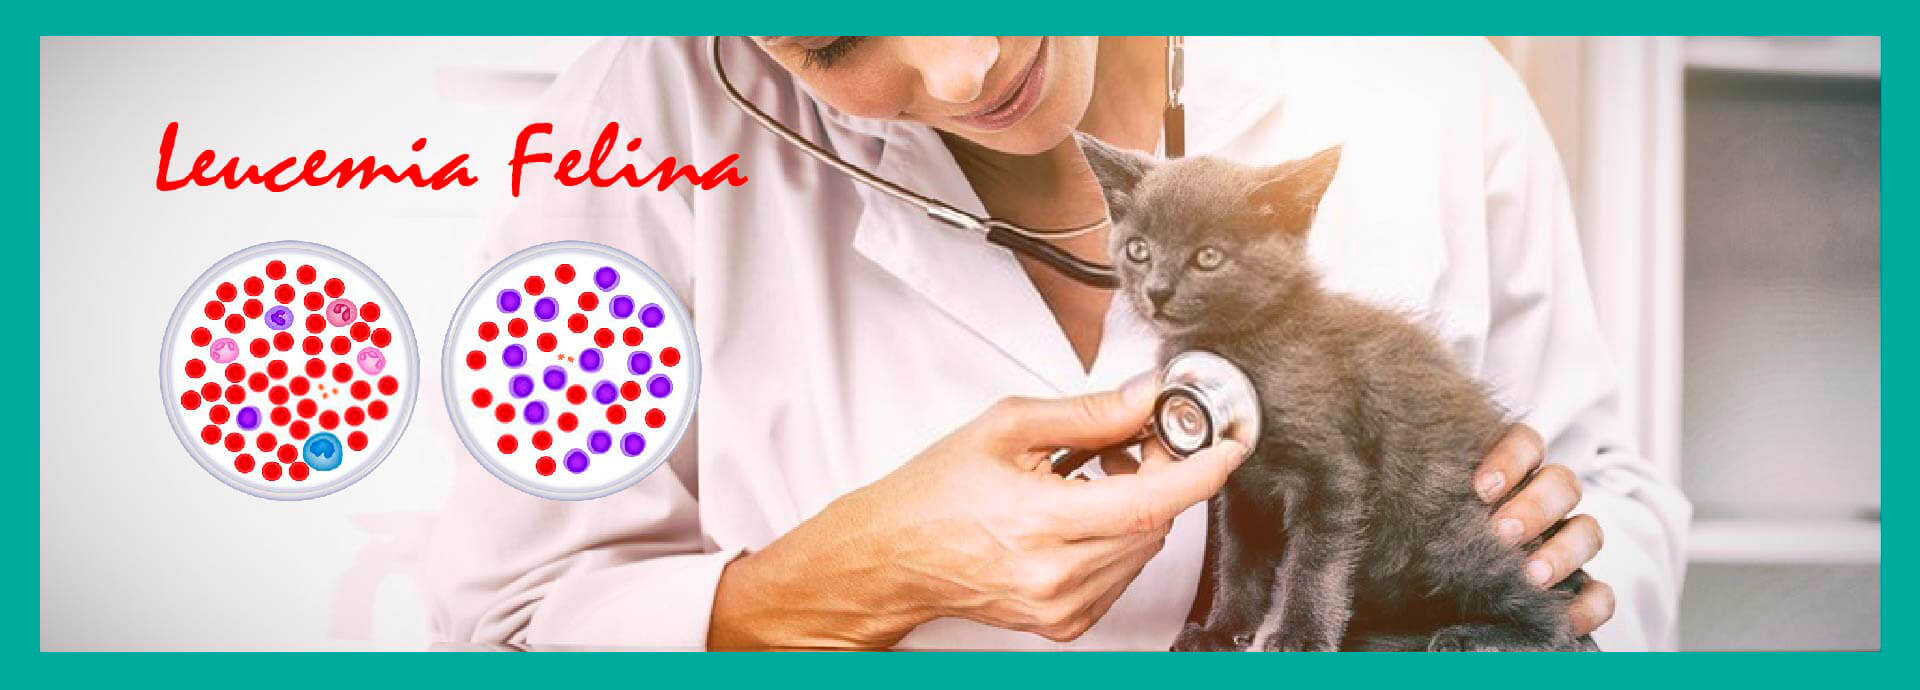 Leucemia Felina: Vacuna y Factores de Riesgo